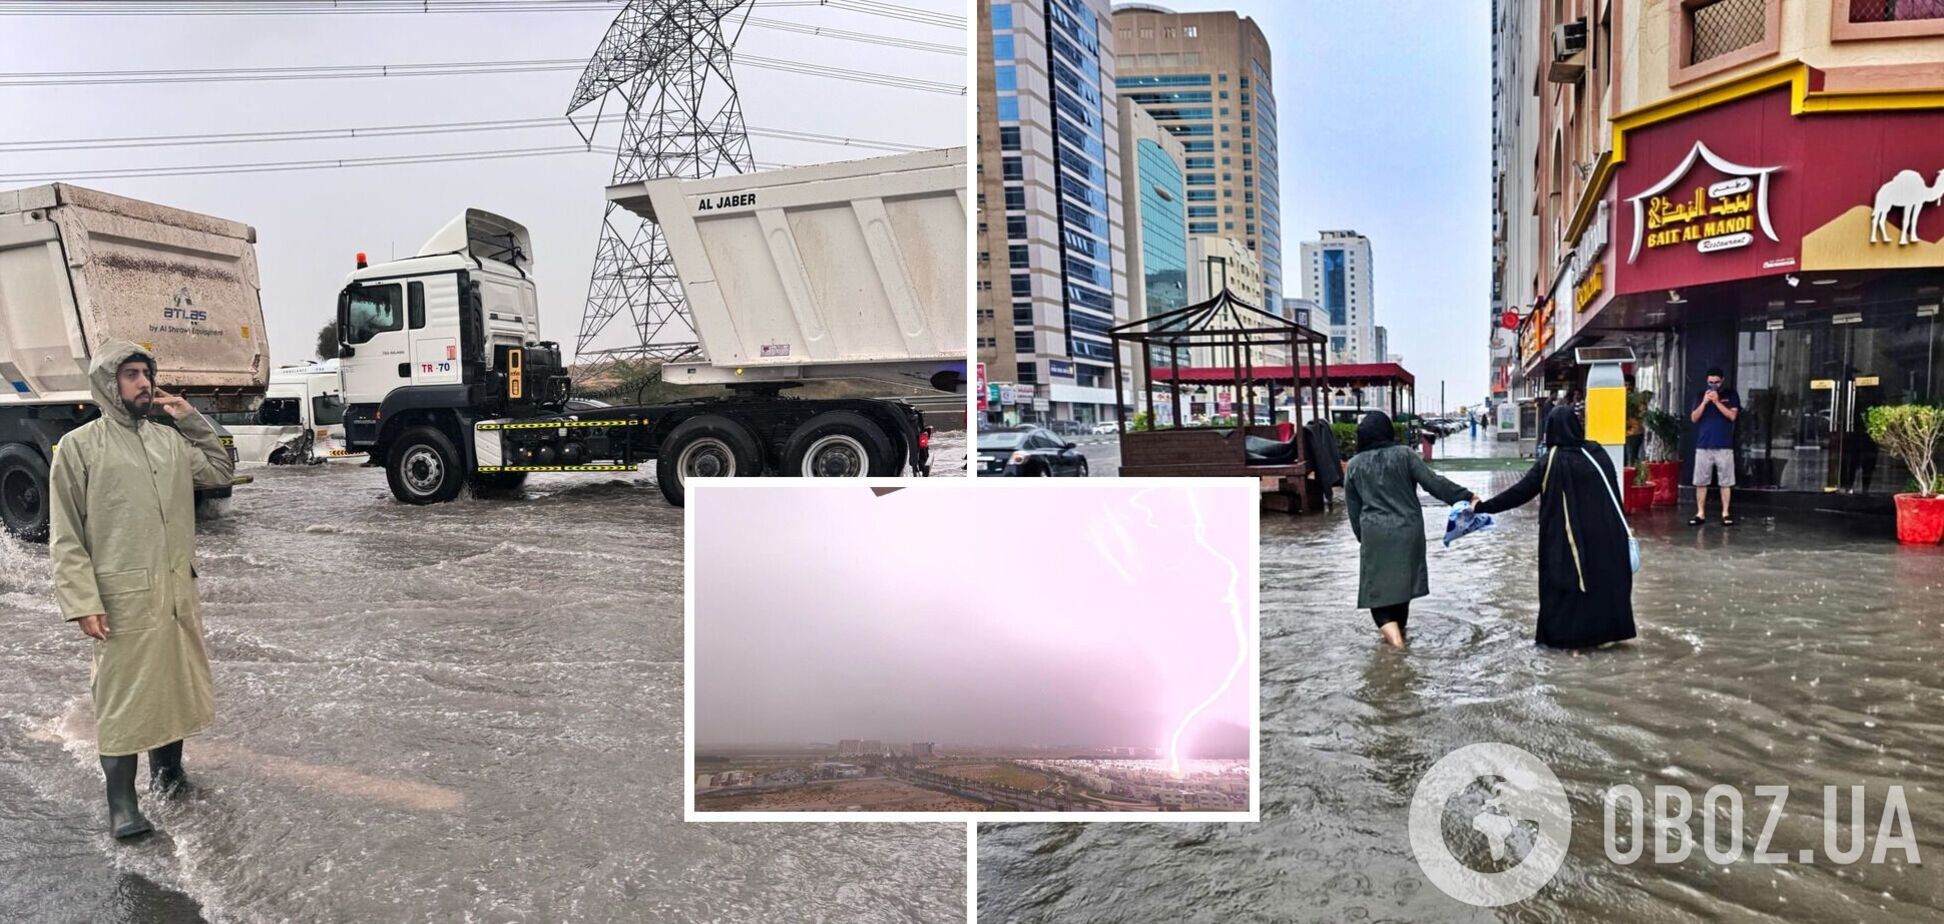 ОАЭ страдают от сильных ливней: Дубай частично ушел под воду. Фото и видео